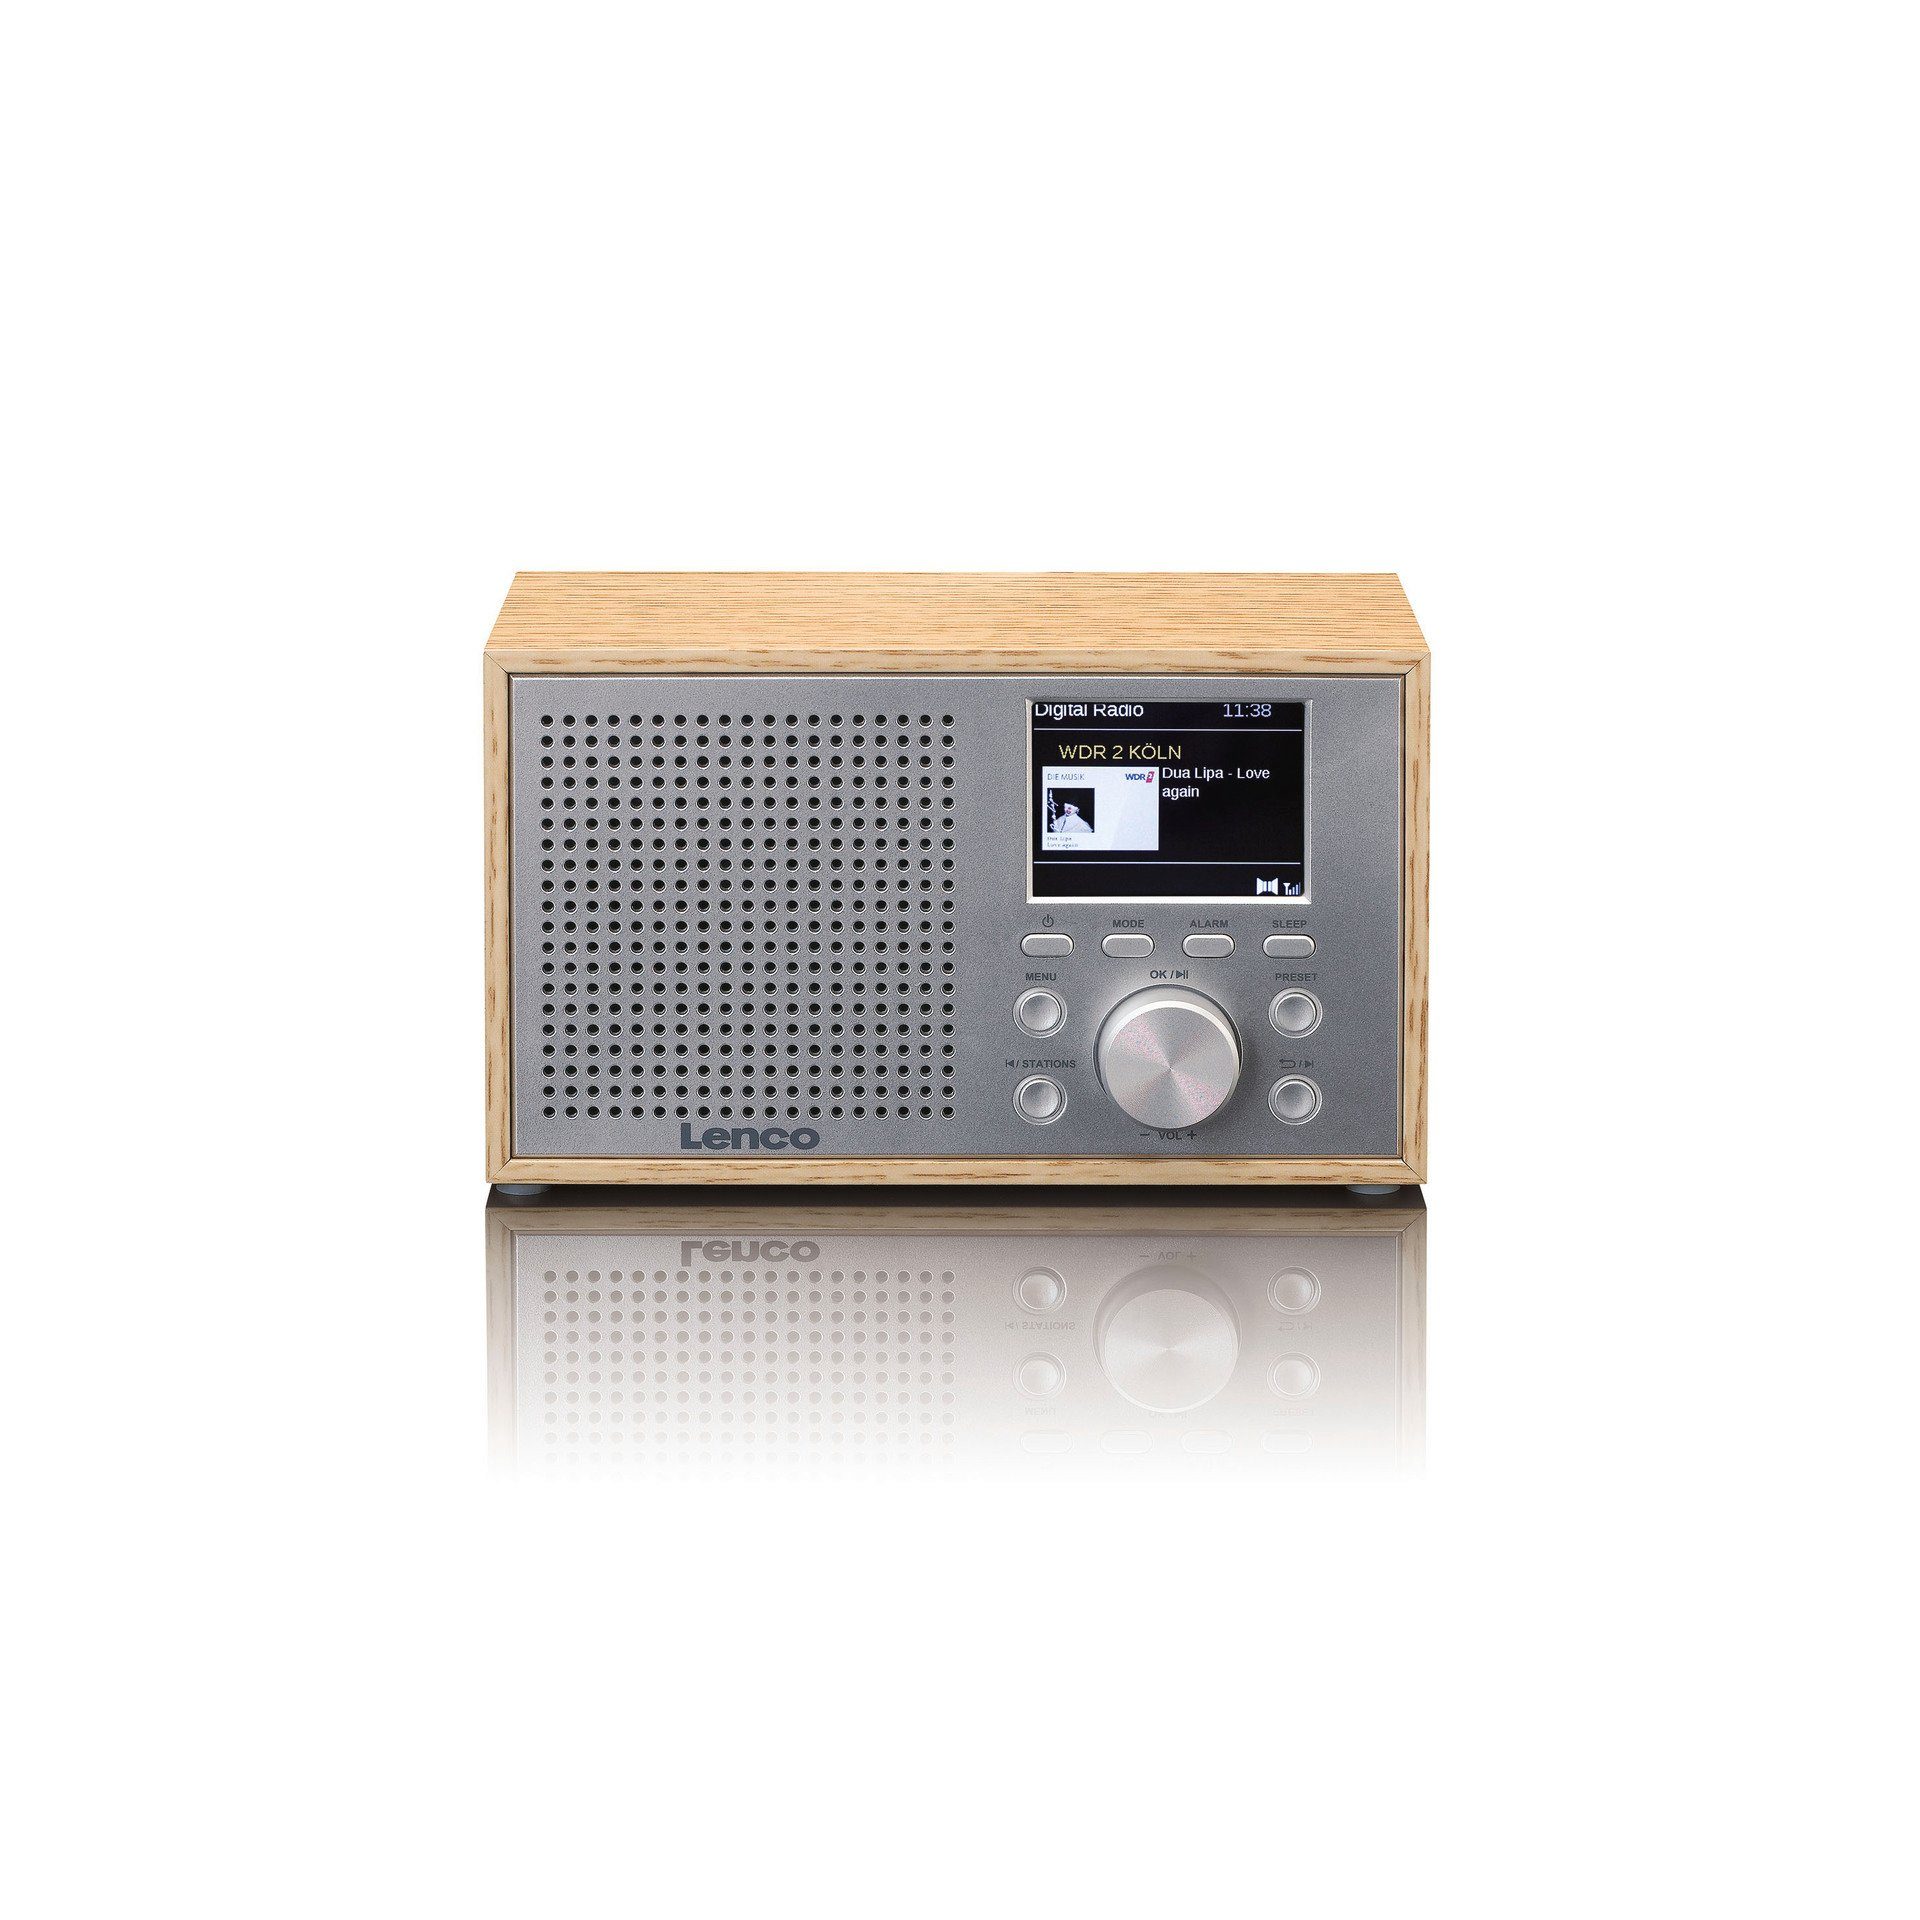 Lenco DAR-017 DAB+/FM Radio mit (DAB), W) Bluetooth Hellbraun;Silber (DAB) Digitalradio (Digitalradio 3